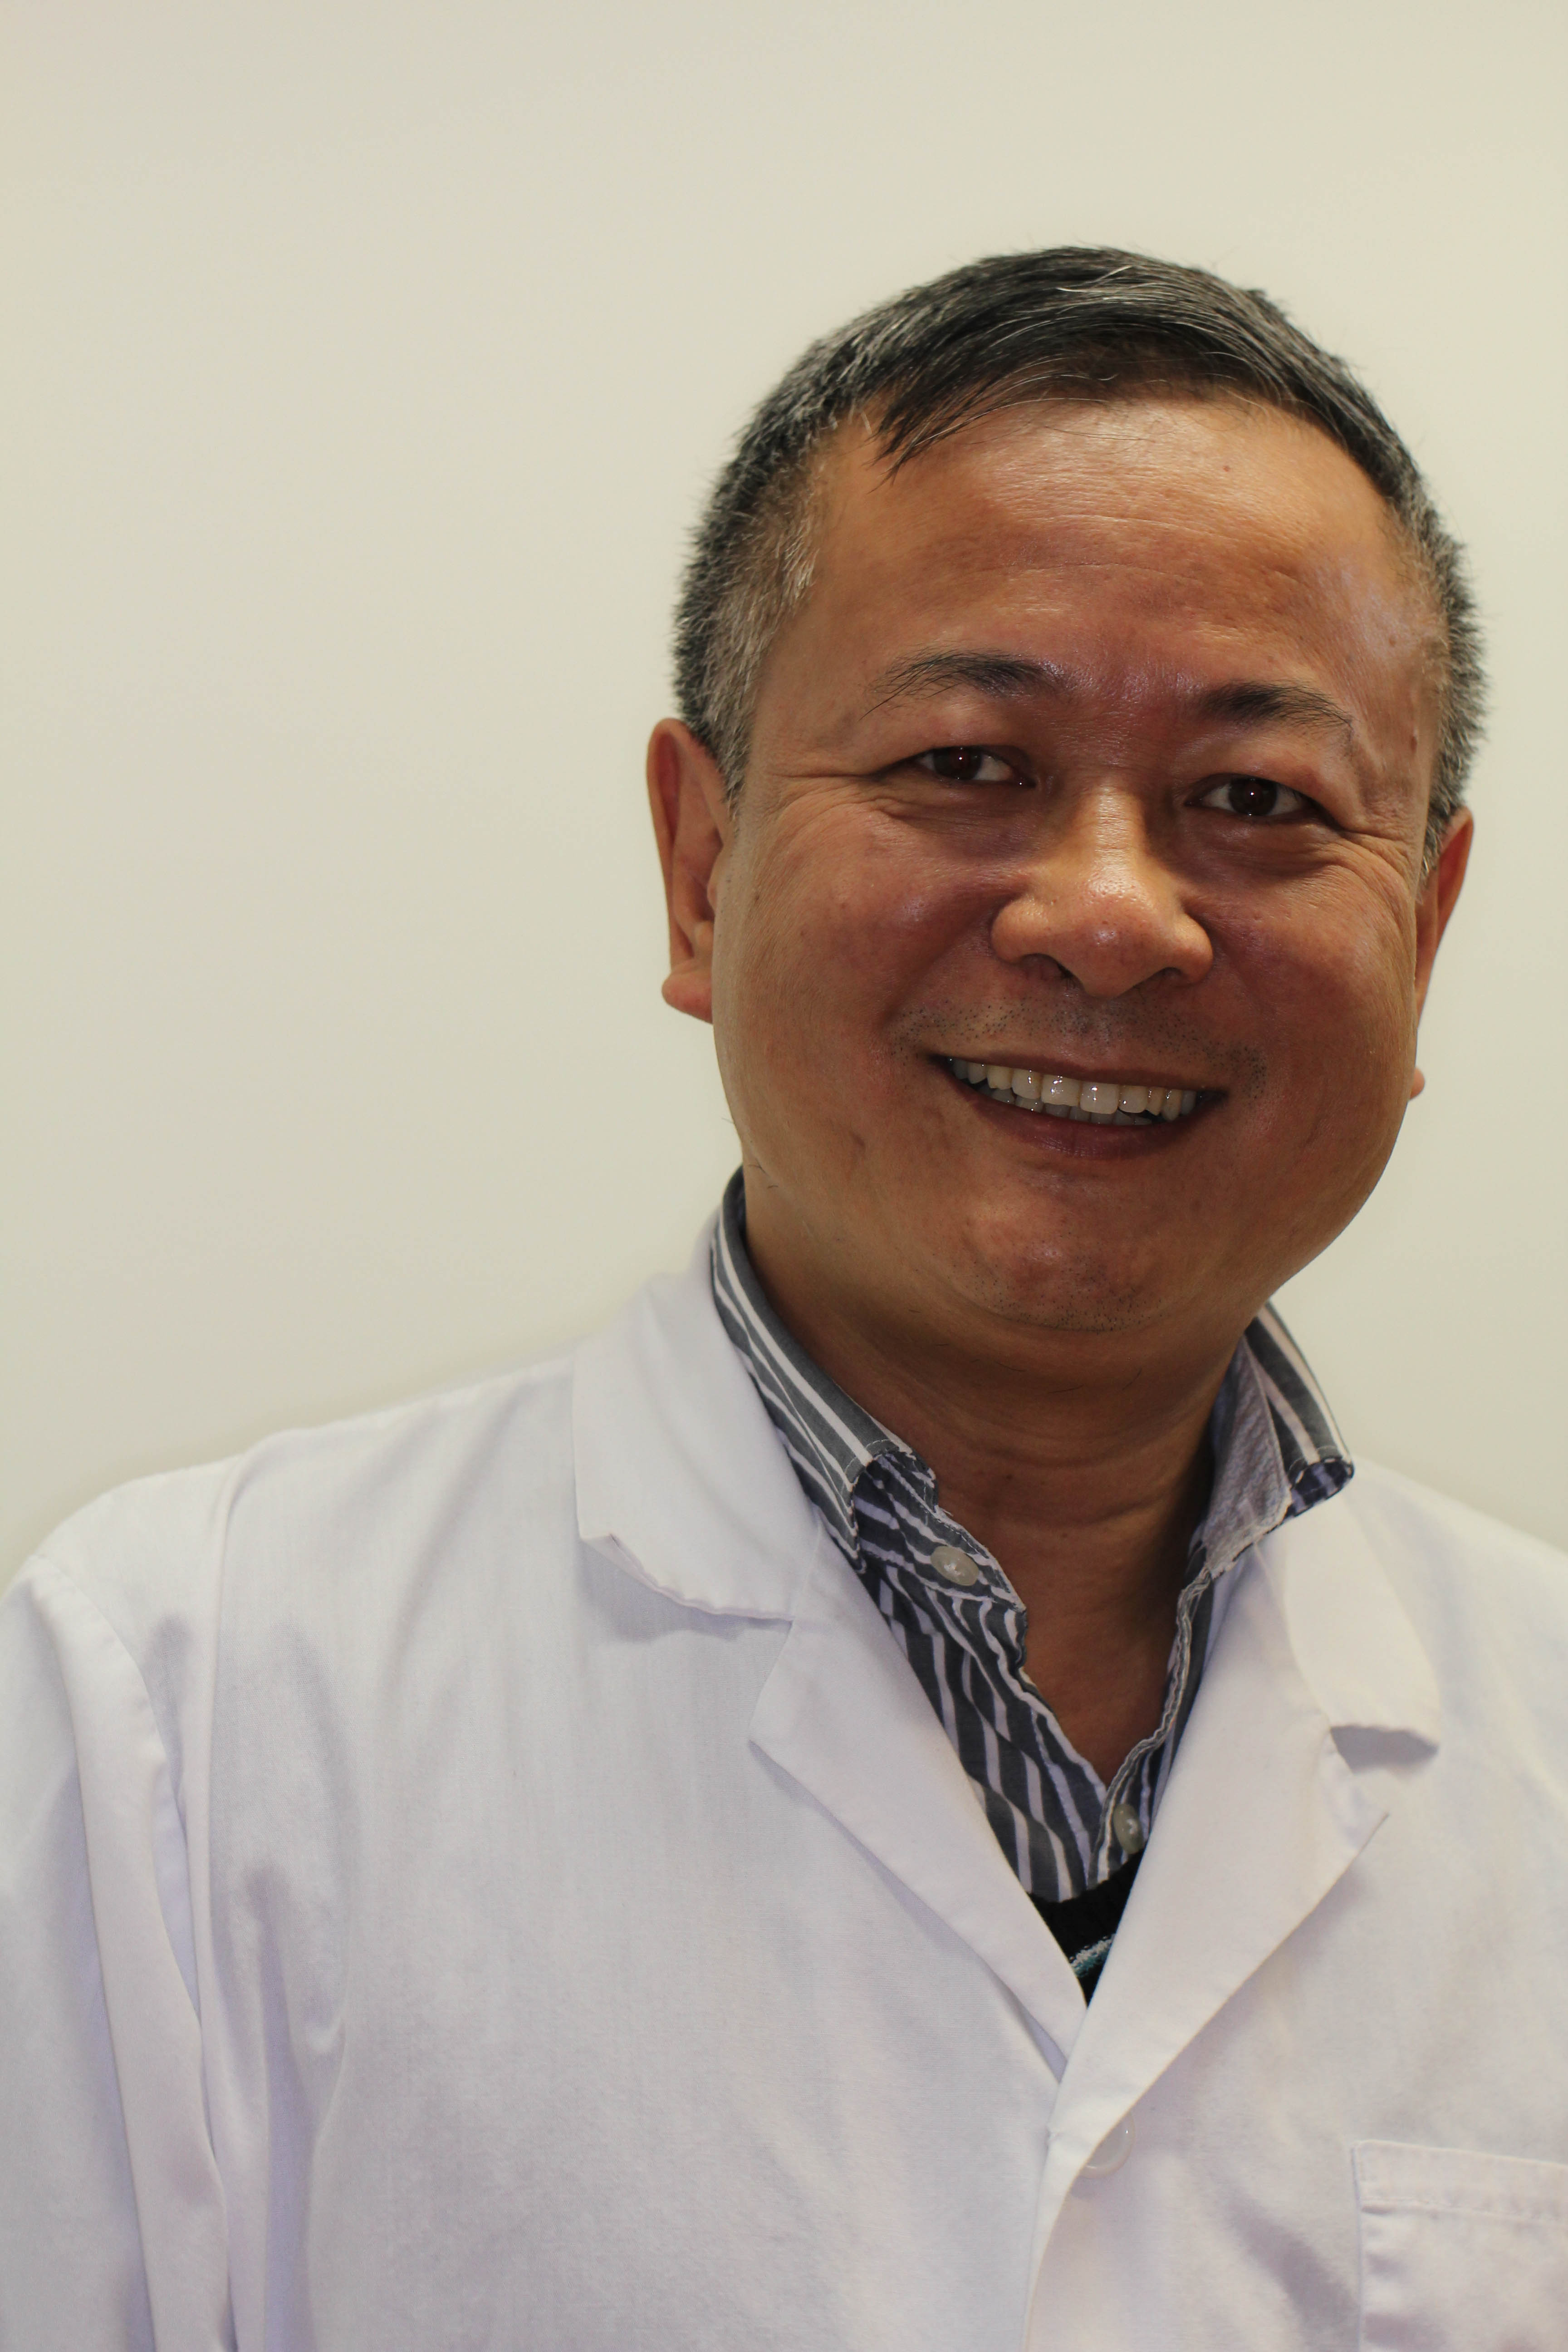 dr zhong bio picture